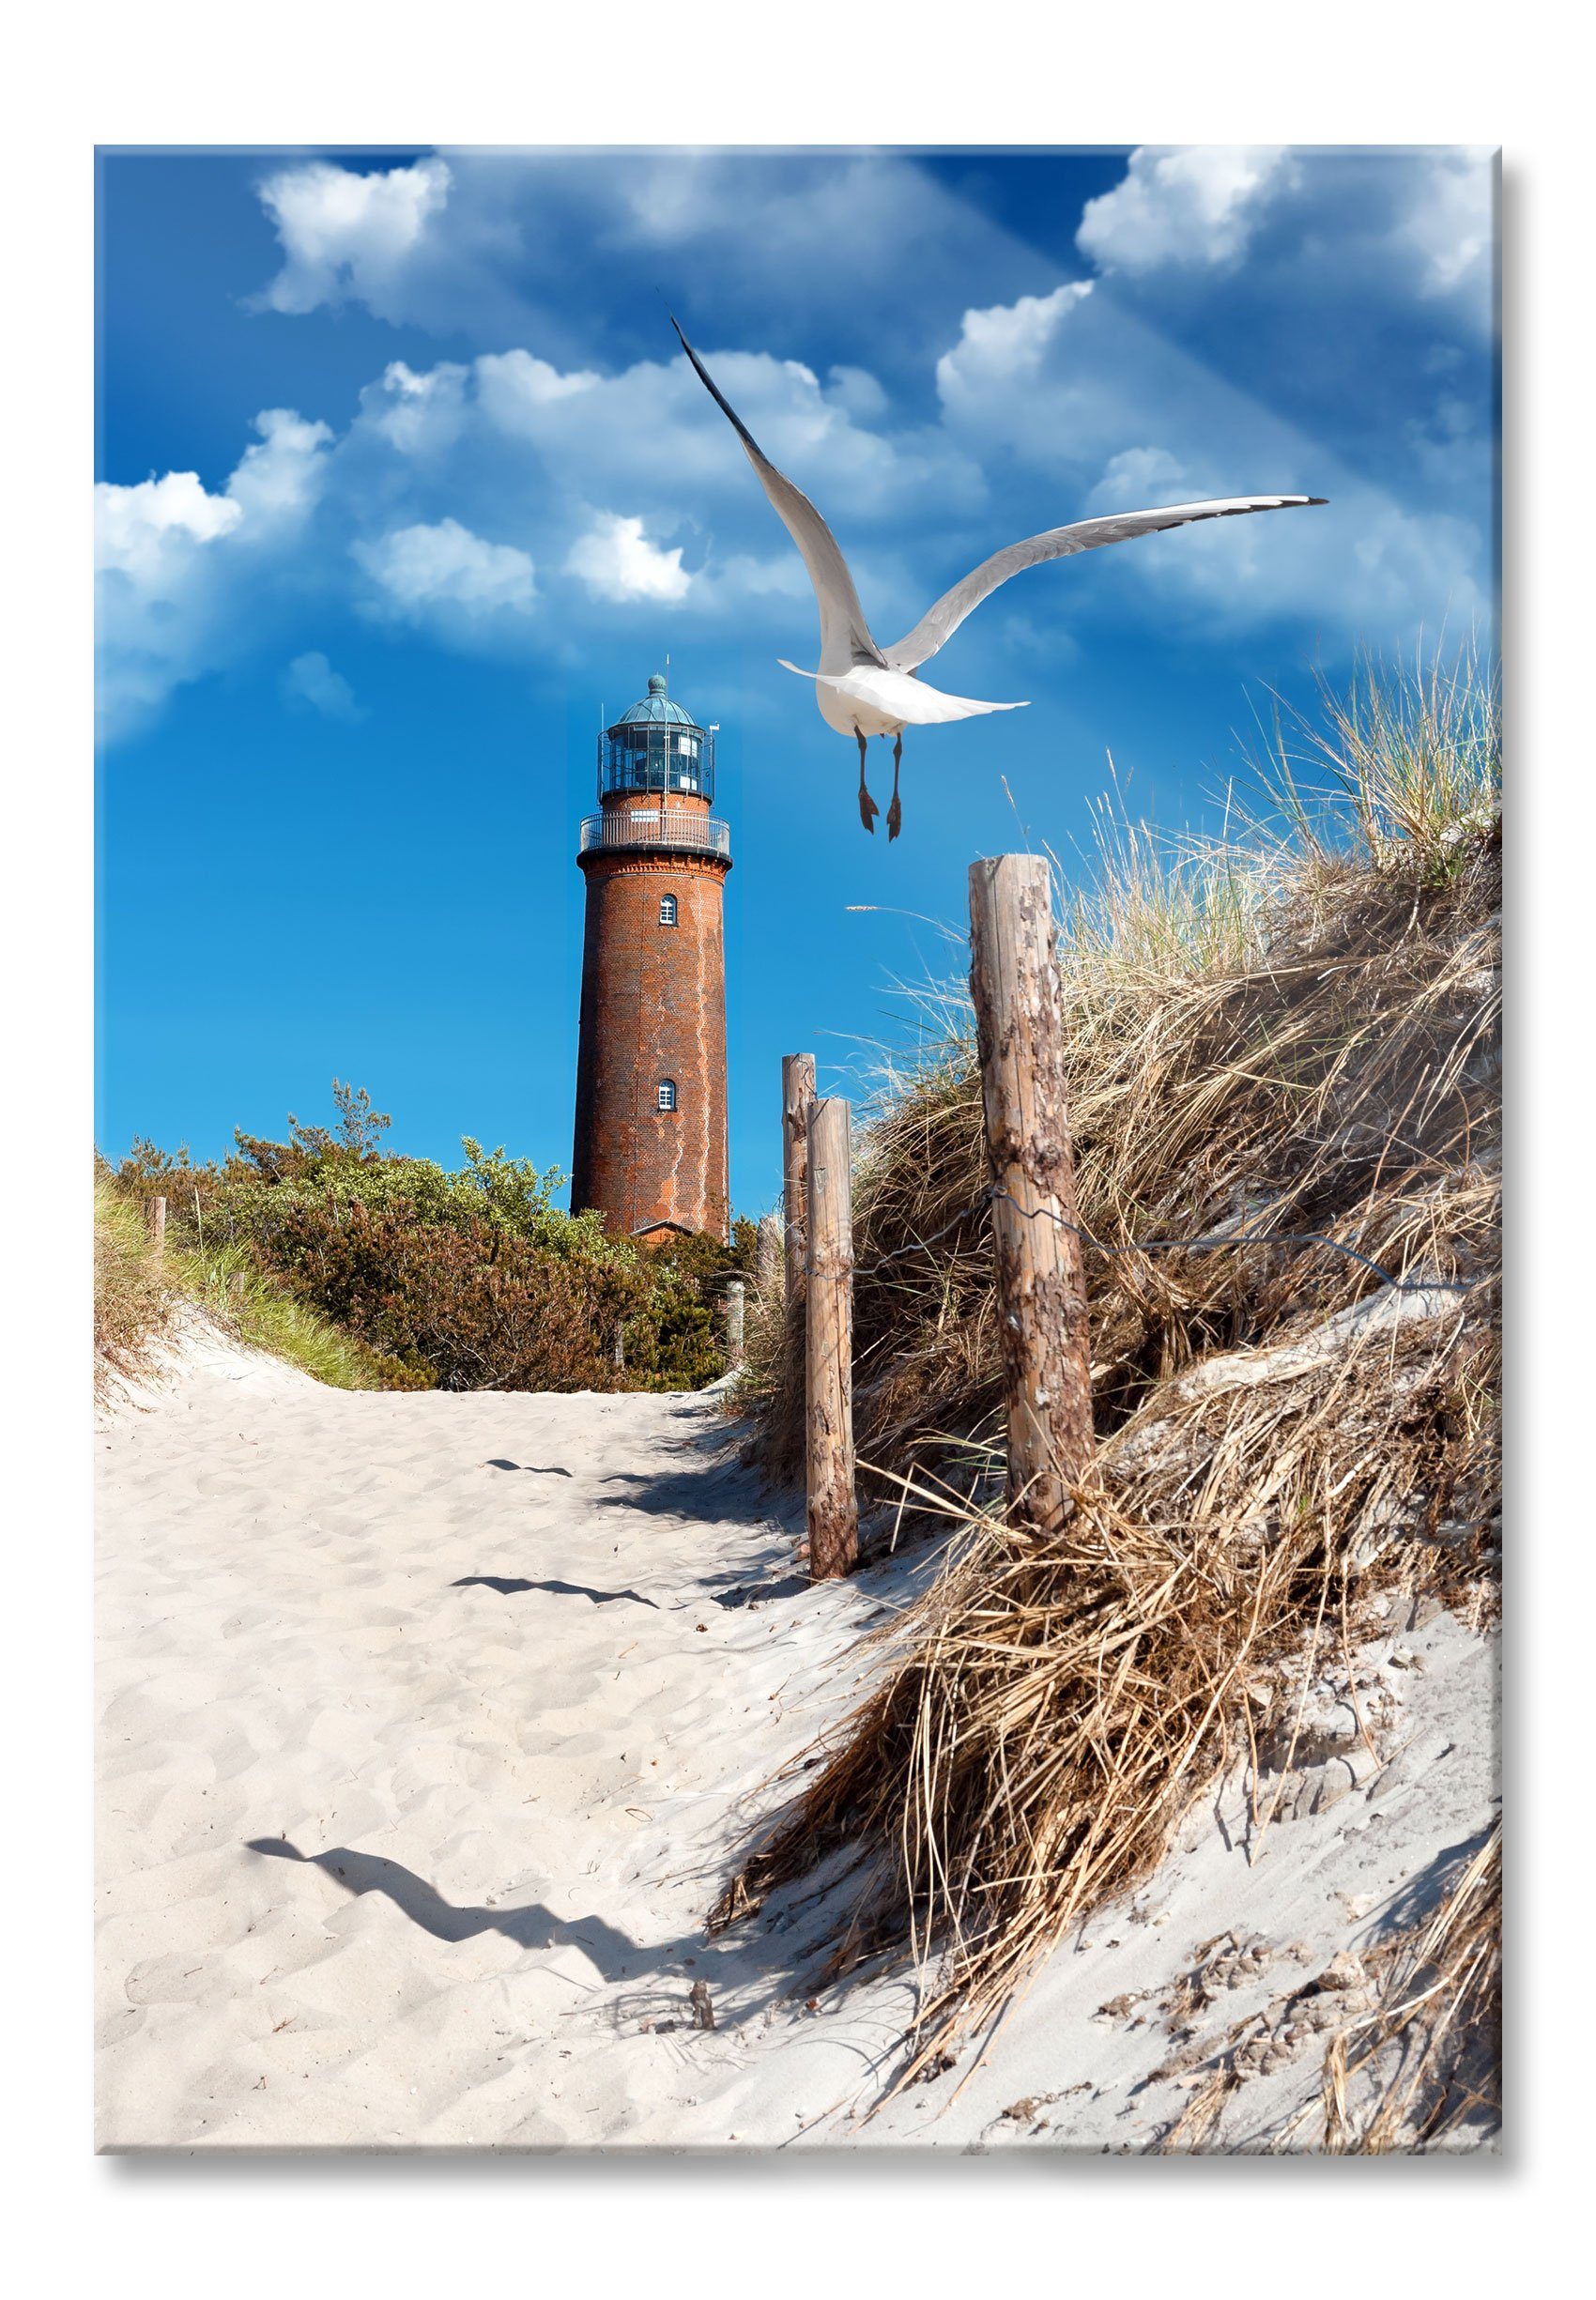 Pixxprint Glasbild Schöner Leuchtturm am Strand, Schöner Leuchtturm am Strand (1 St), Glasbild aus Echtglas, inkl. Aufhängungen und Abstandshalter